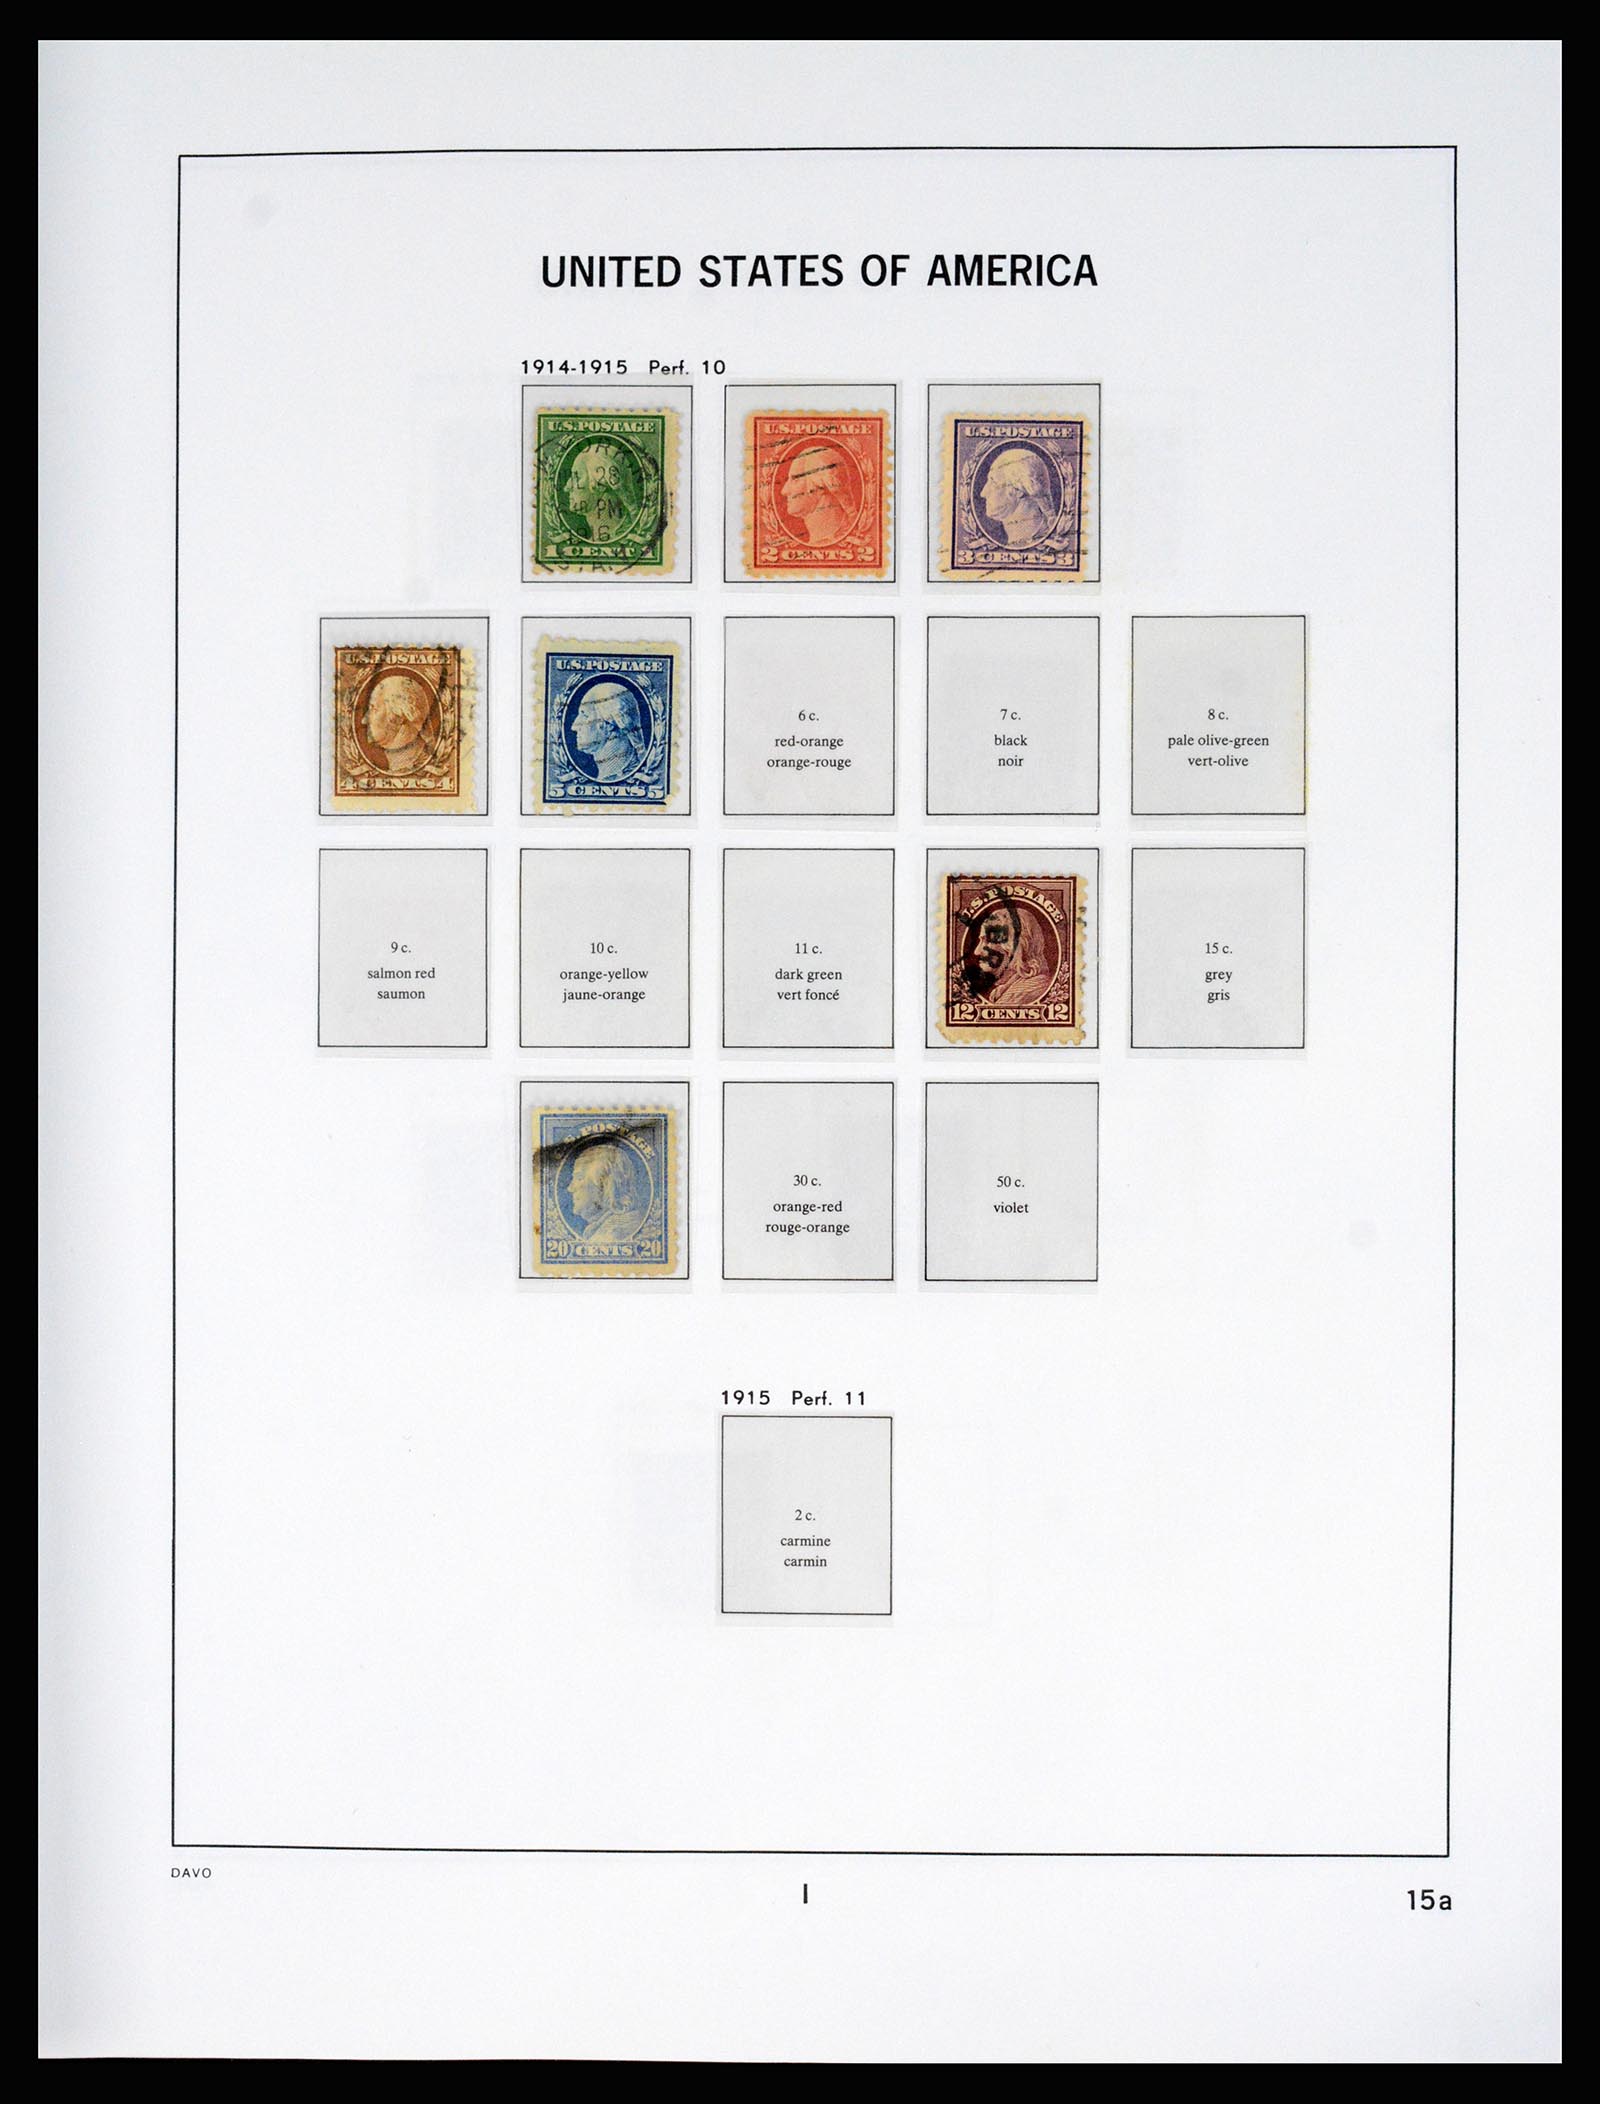 37166 019 - Stamp collection 37166 USA 1851-2008.